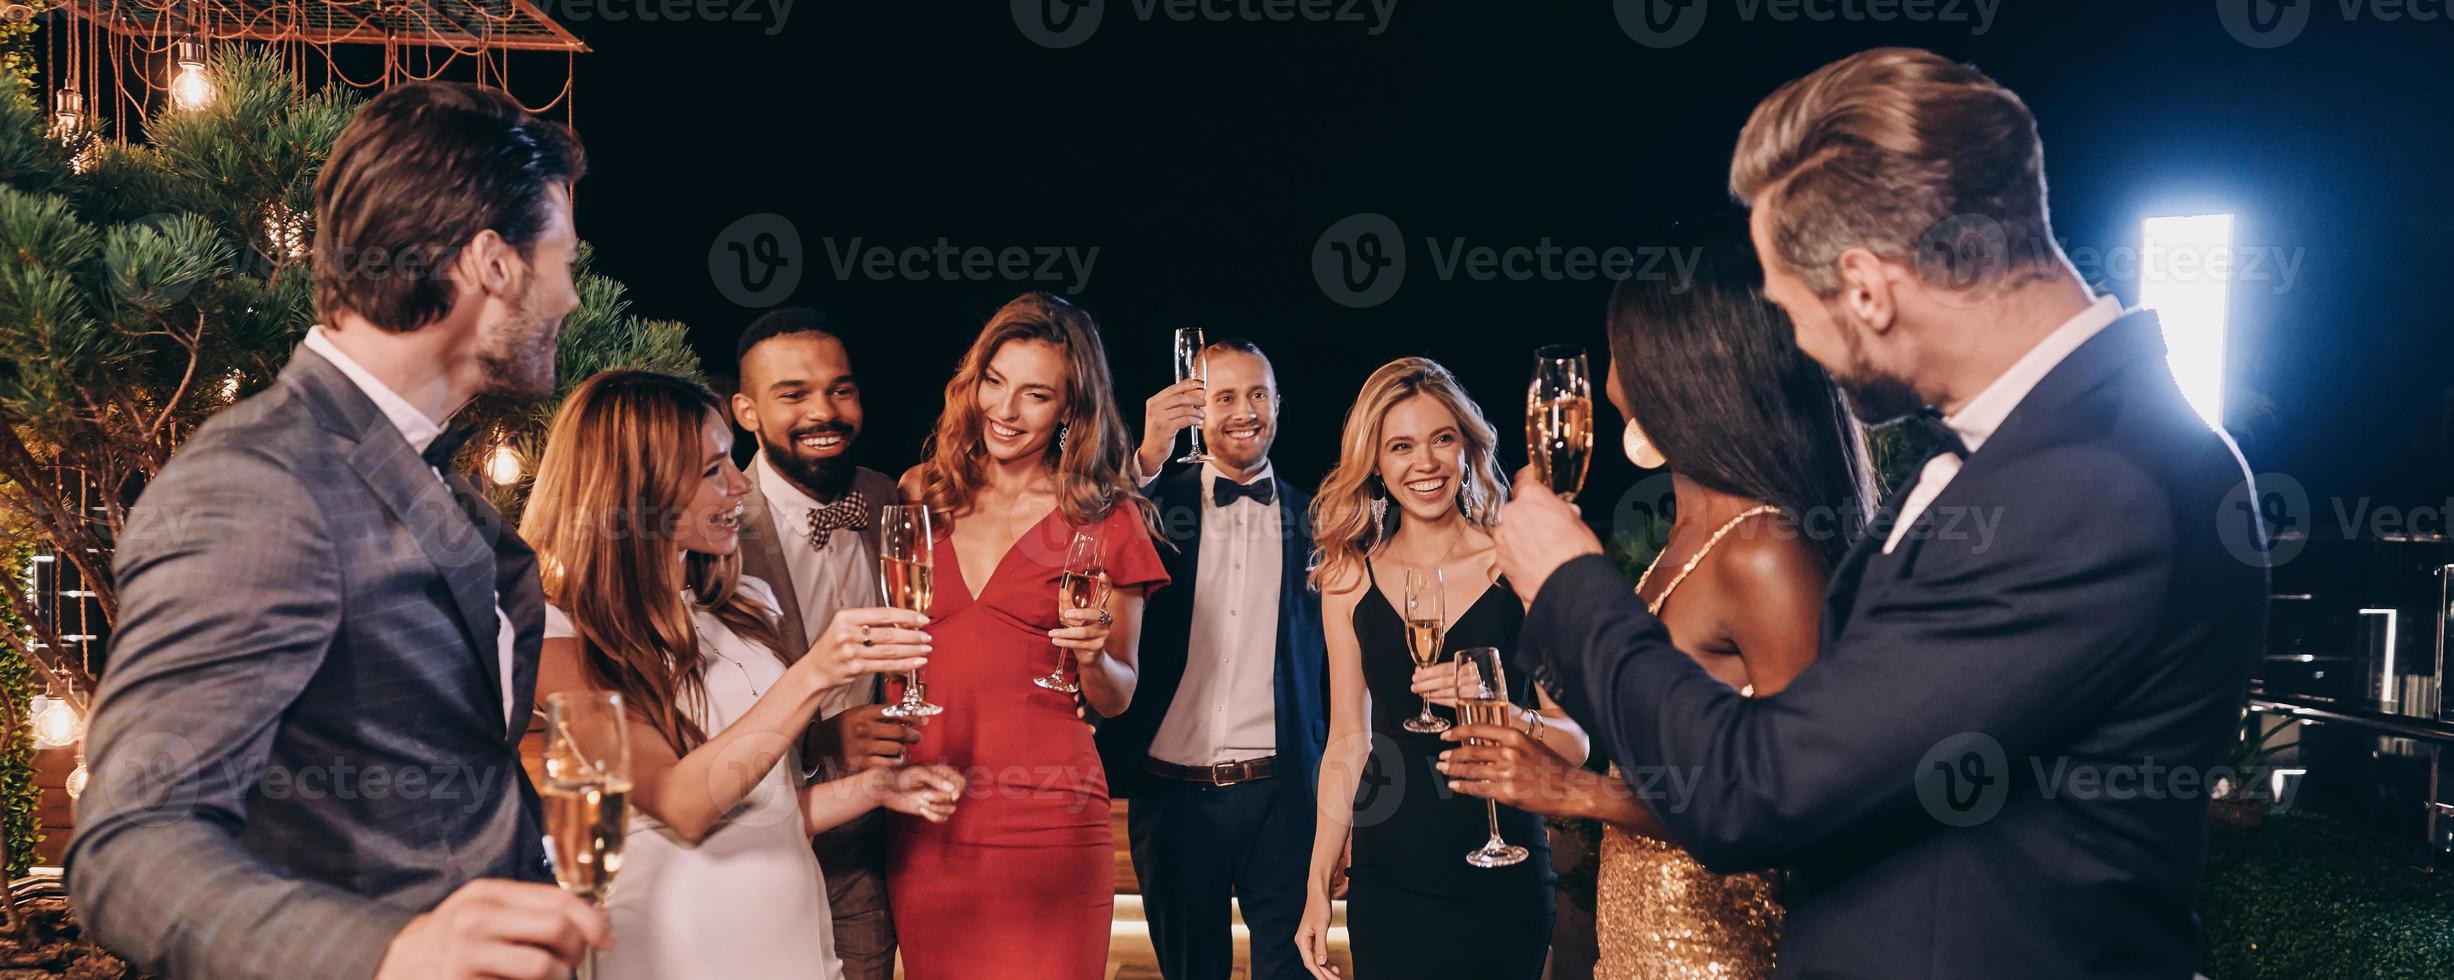 grupo de pessoas bonitas em trajes formais se comunicando e sorrindo enquanto passa o tempo na festa de luxo foto